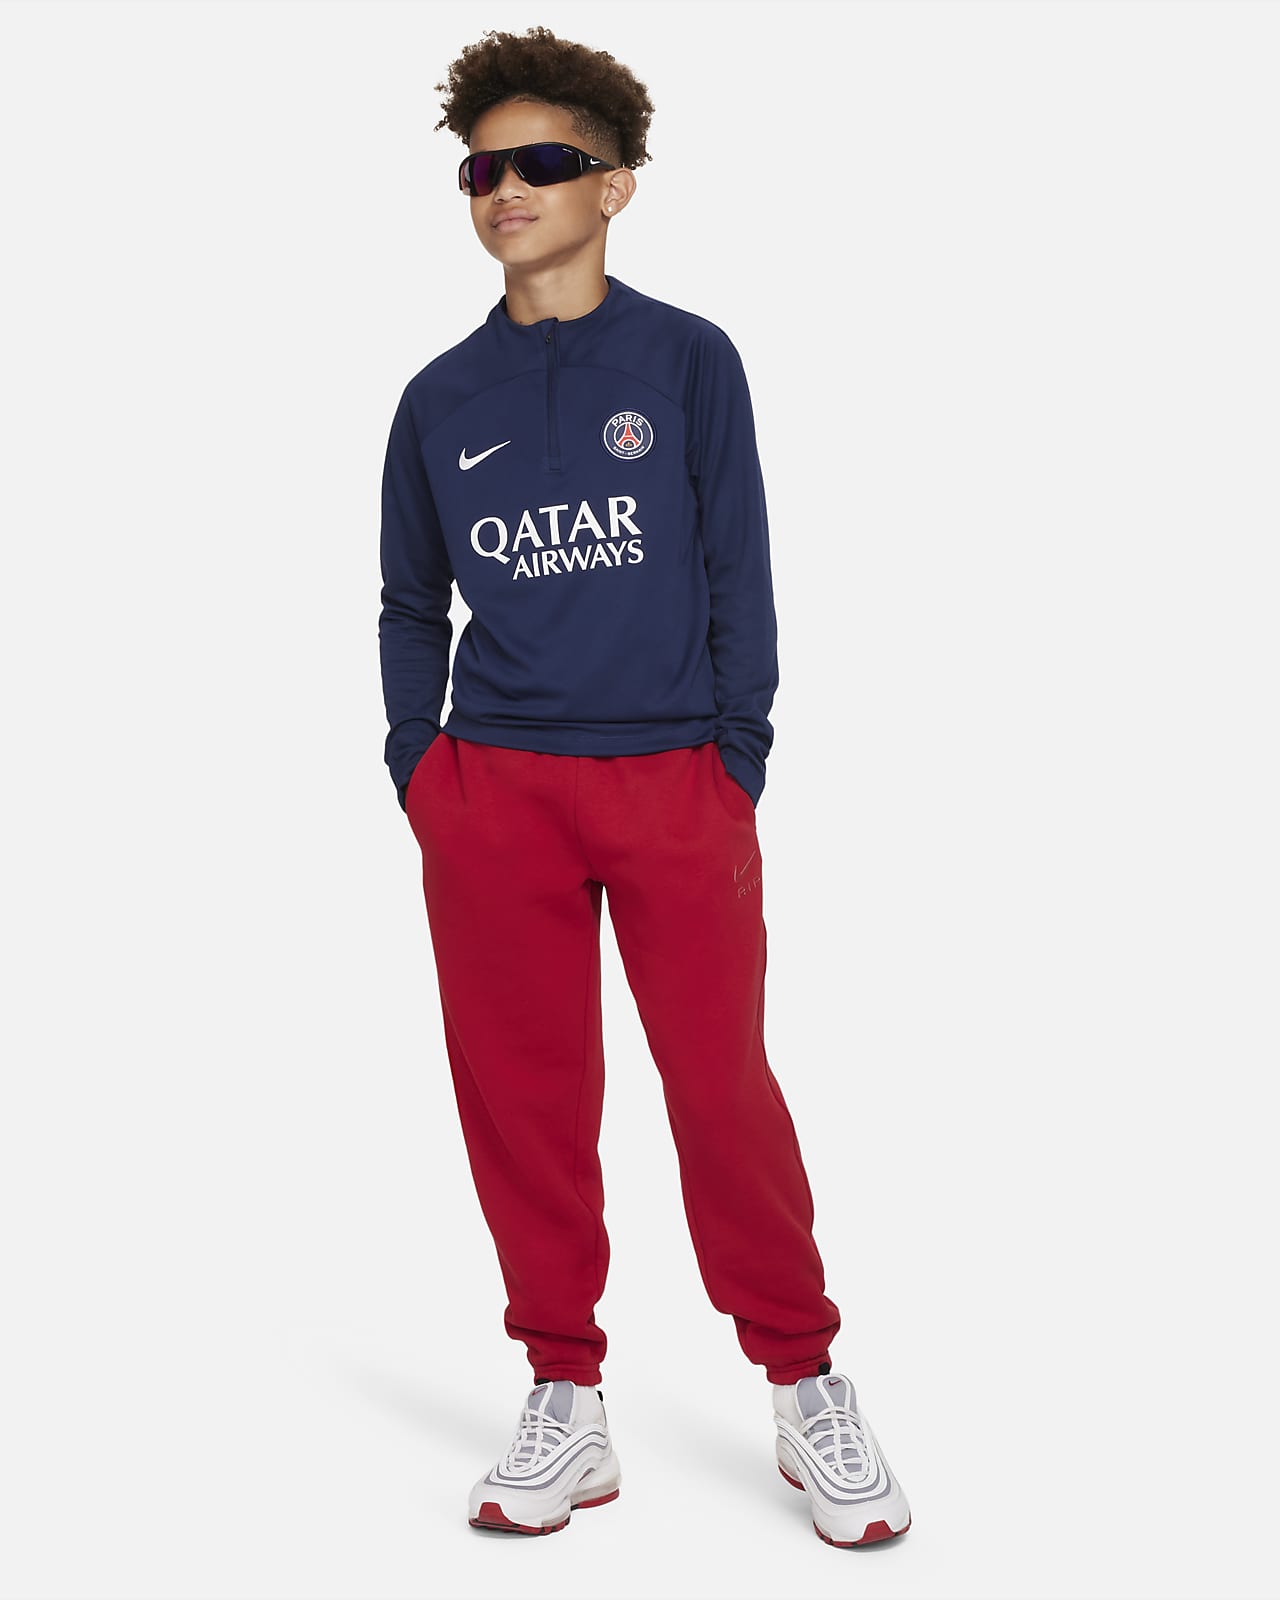 Camiseta Nike Futbol PSG Niño y Df Std Jsy Ss Midnight - S/C — Menpi